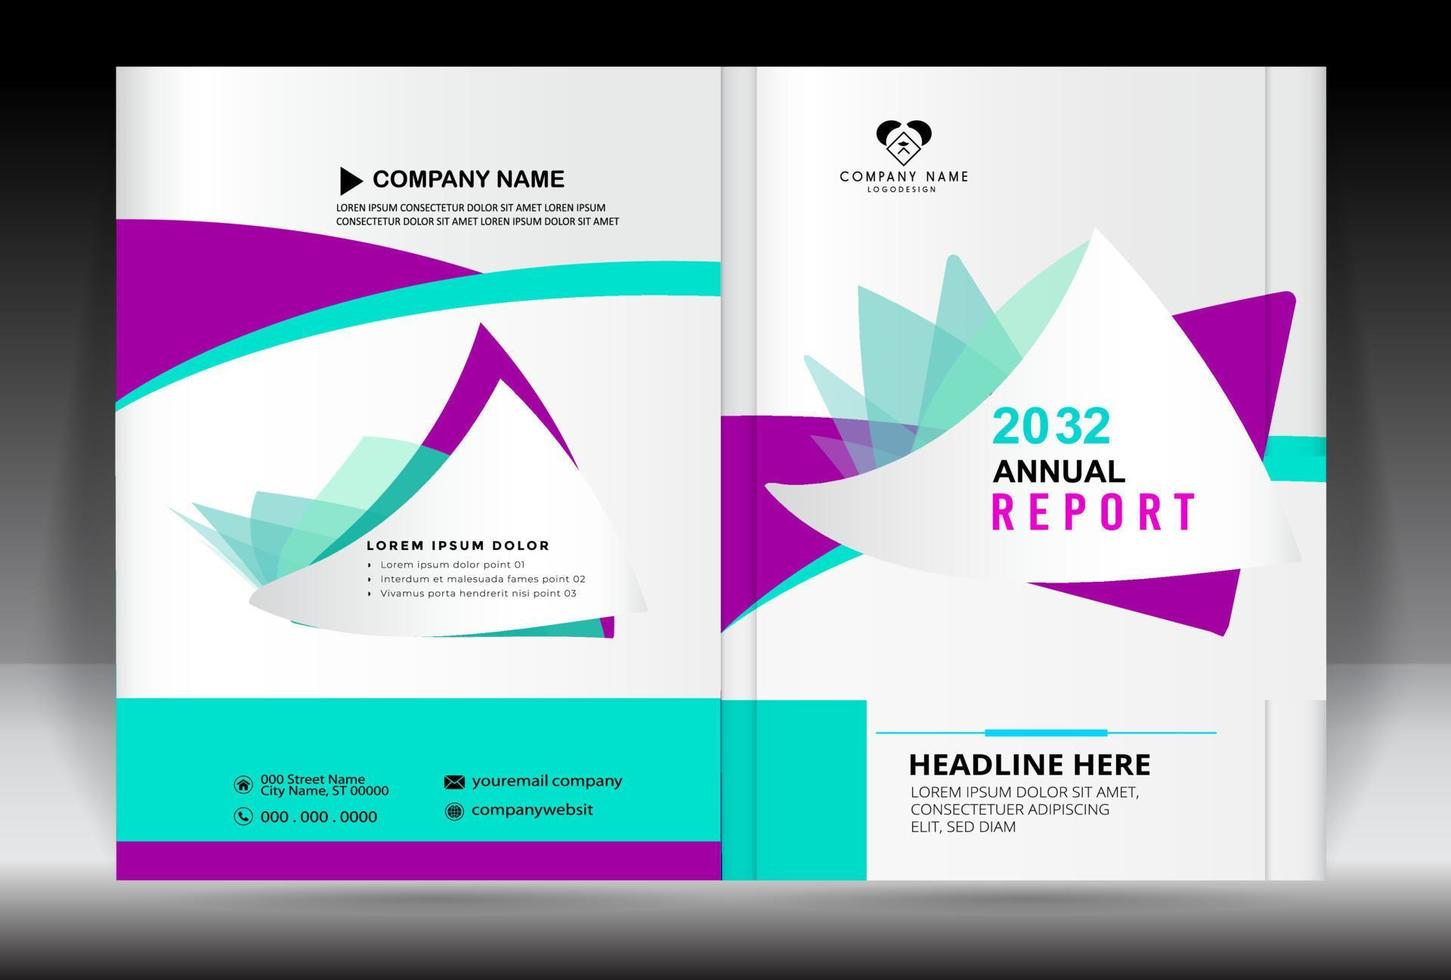 relatório anual, portfólio criativo, modelo de brochura de negócios, flyer corporativo, layout de design de capa de brochura, apresentação de negócios, design de capa de livro, capa de revista, flyer moderno. vetor